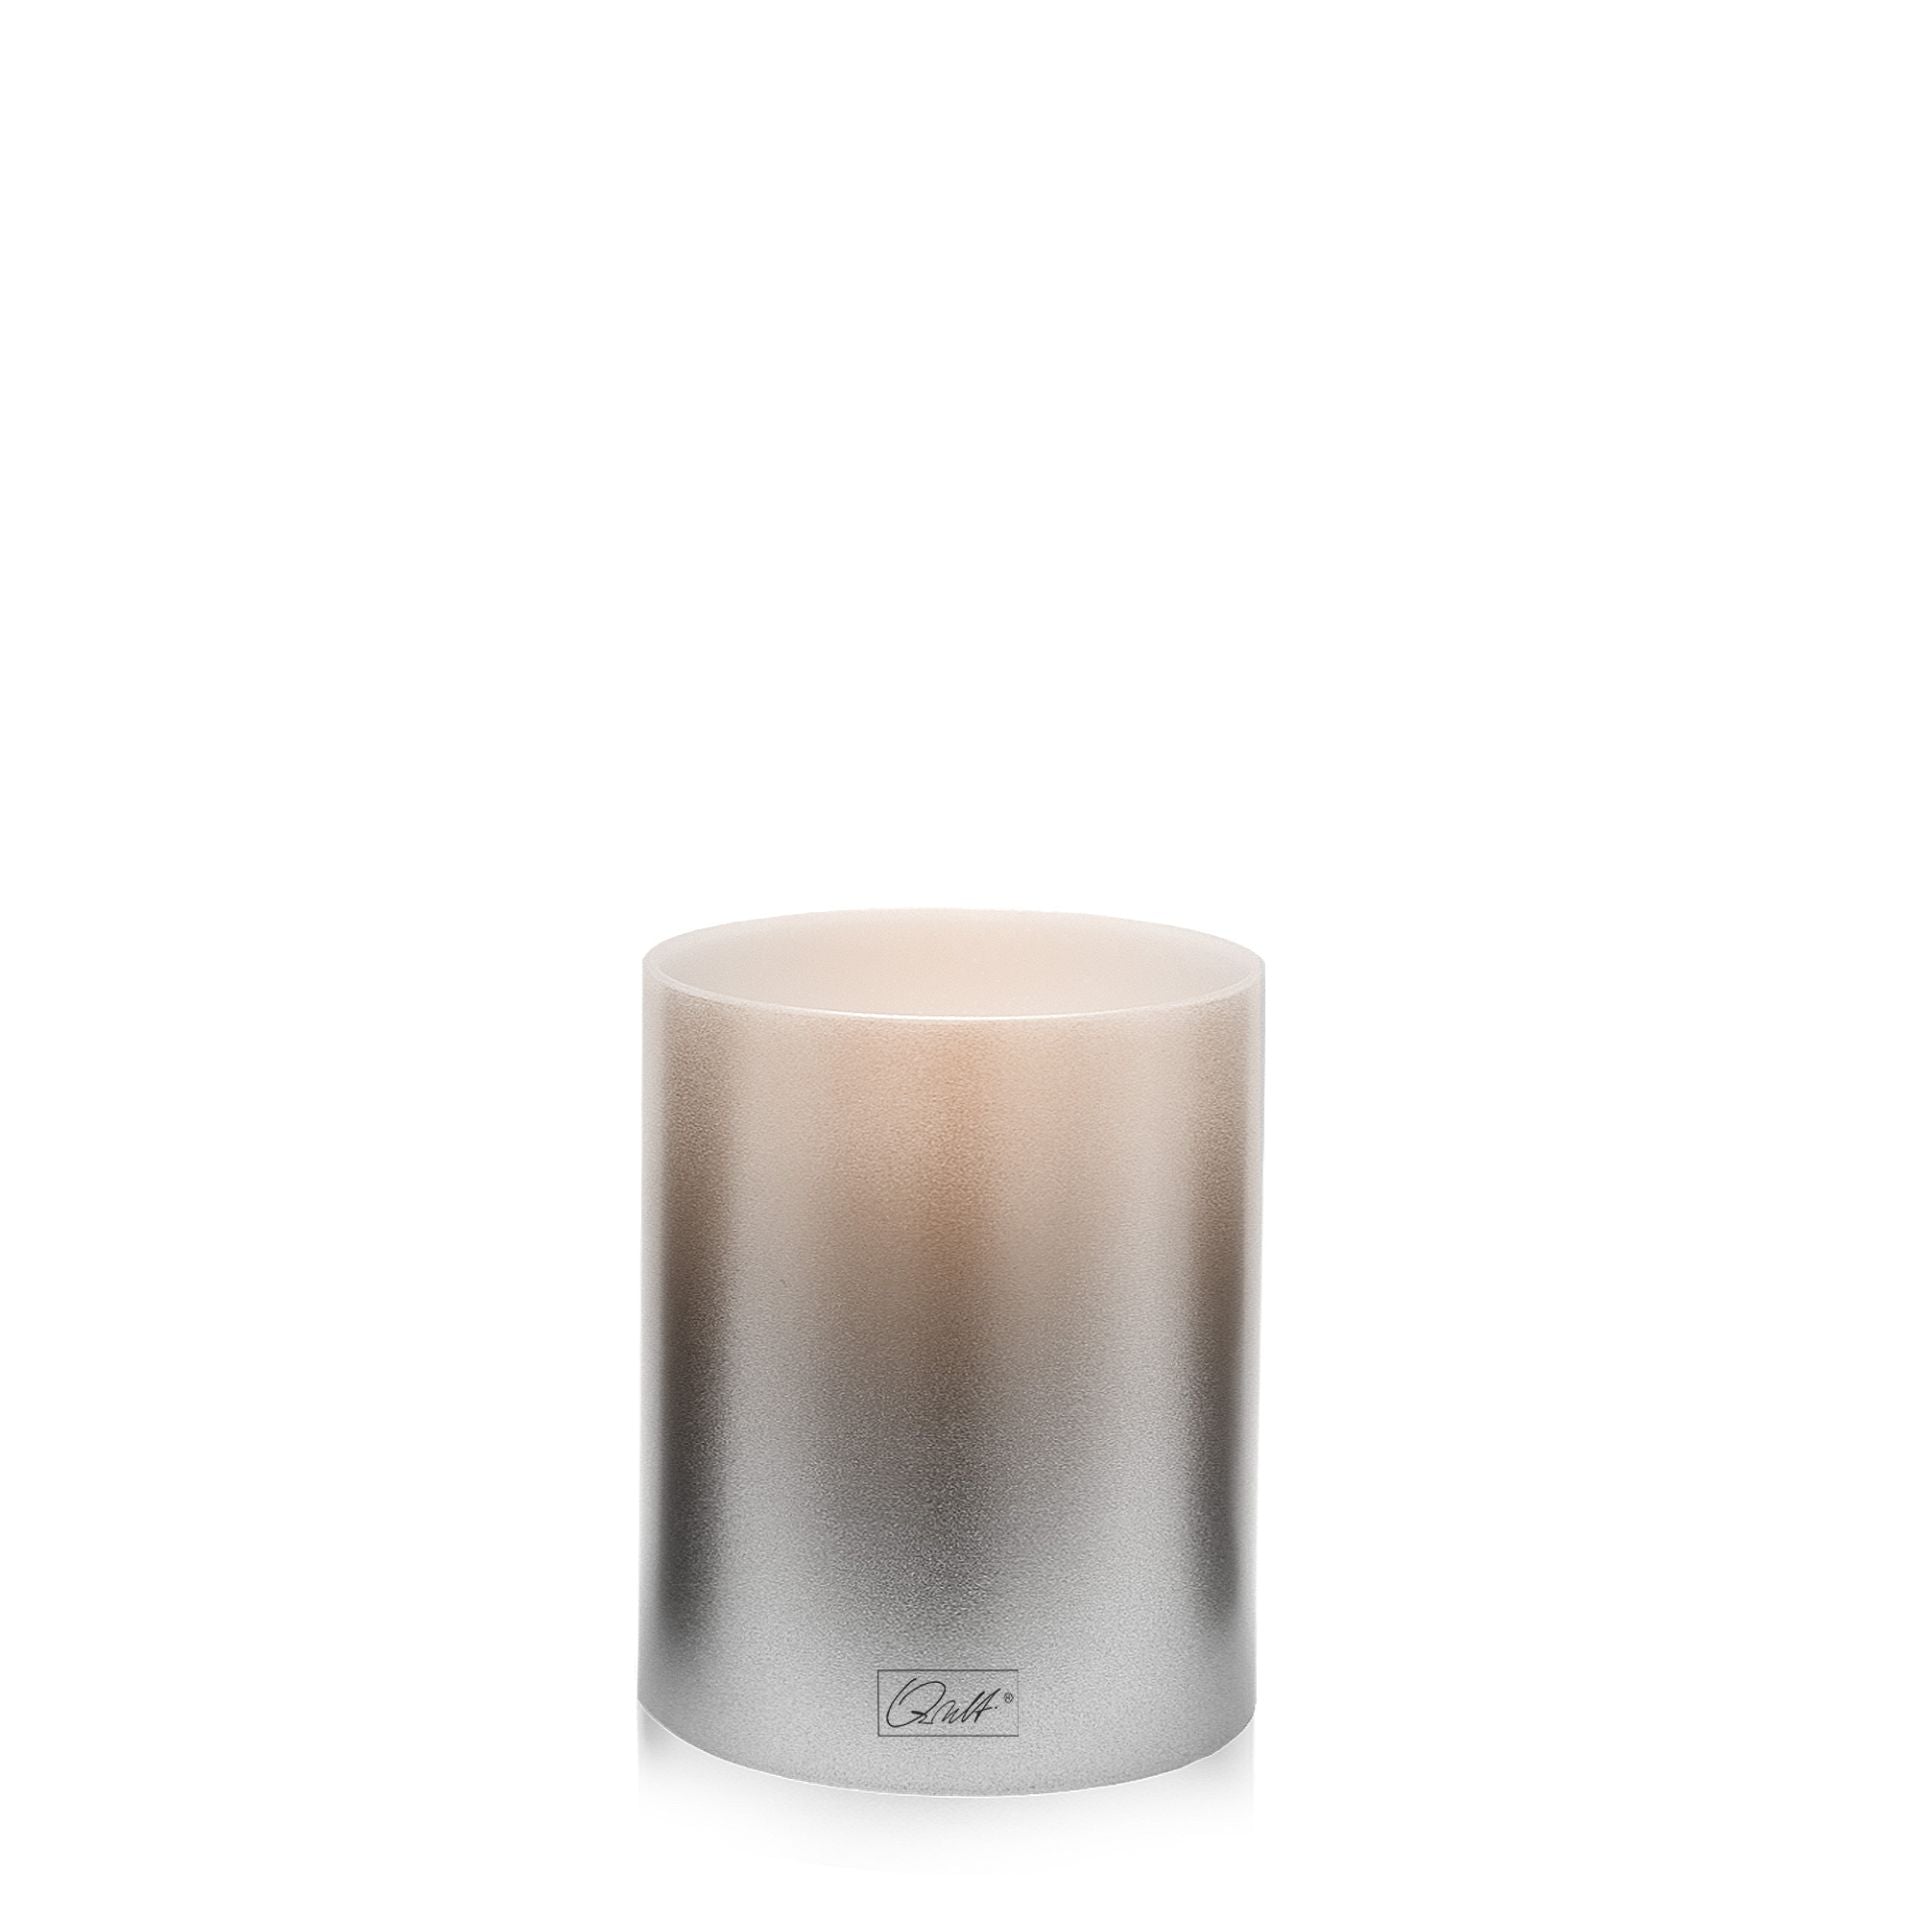 Kaufen silber Qult Inside Teelichthalter in Kerzenform Metallic